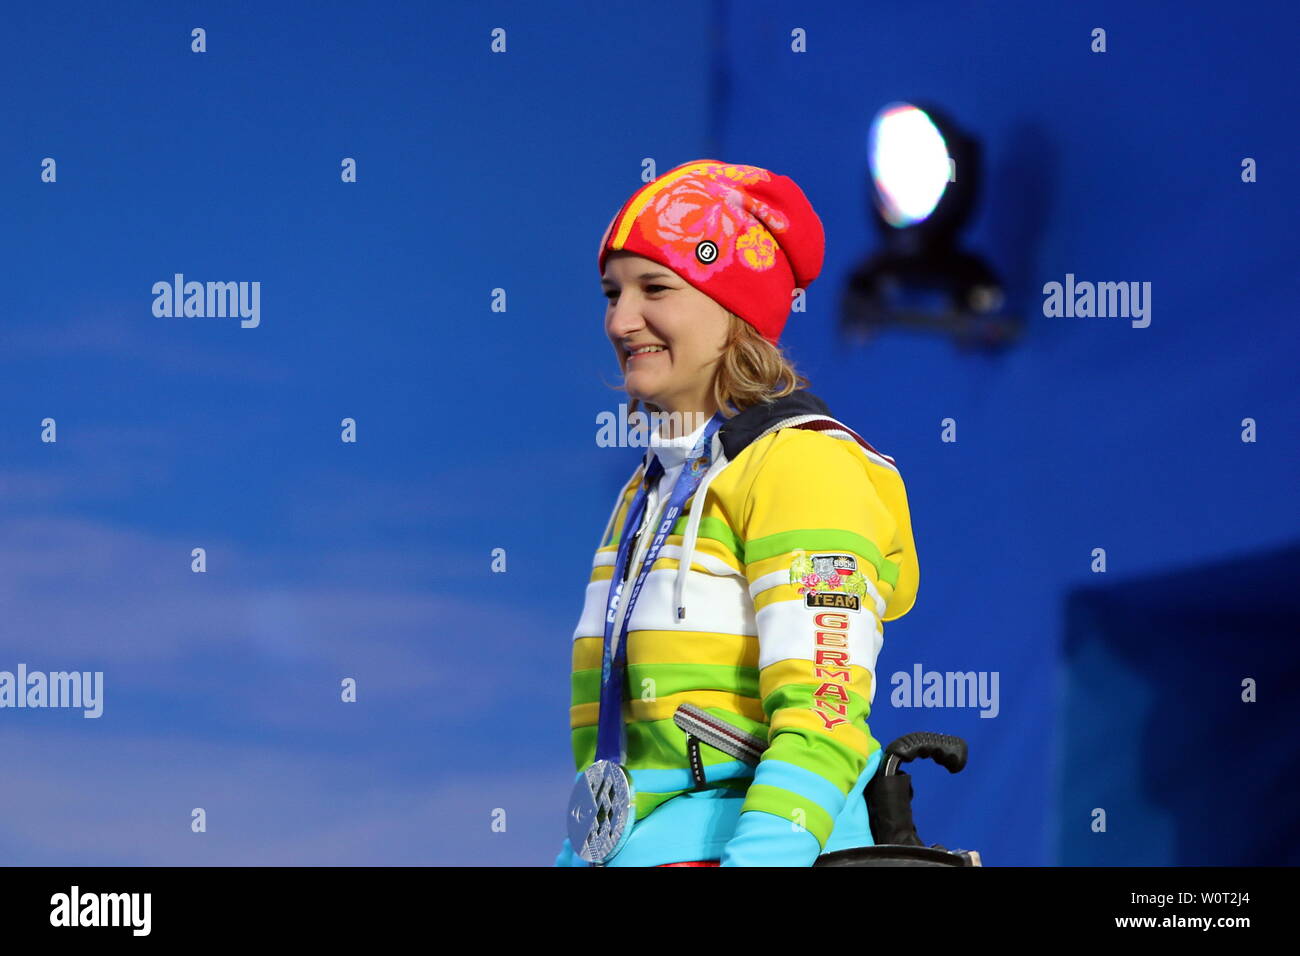 Anna-Lena FORSTER gewinnt dans Paralympicsilber - Sotschi Siegerehrung Rosa Khutor Ski Alpin 6. Jeux paralympiques Jeux paralympiques Tag Sotschi Sotschi 2014 / 2014 Jeux paralympiques d'hiver de Sotchi Banque D'Images